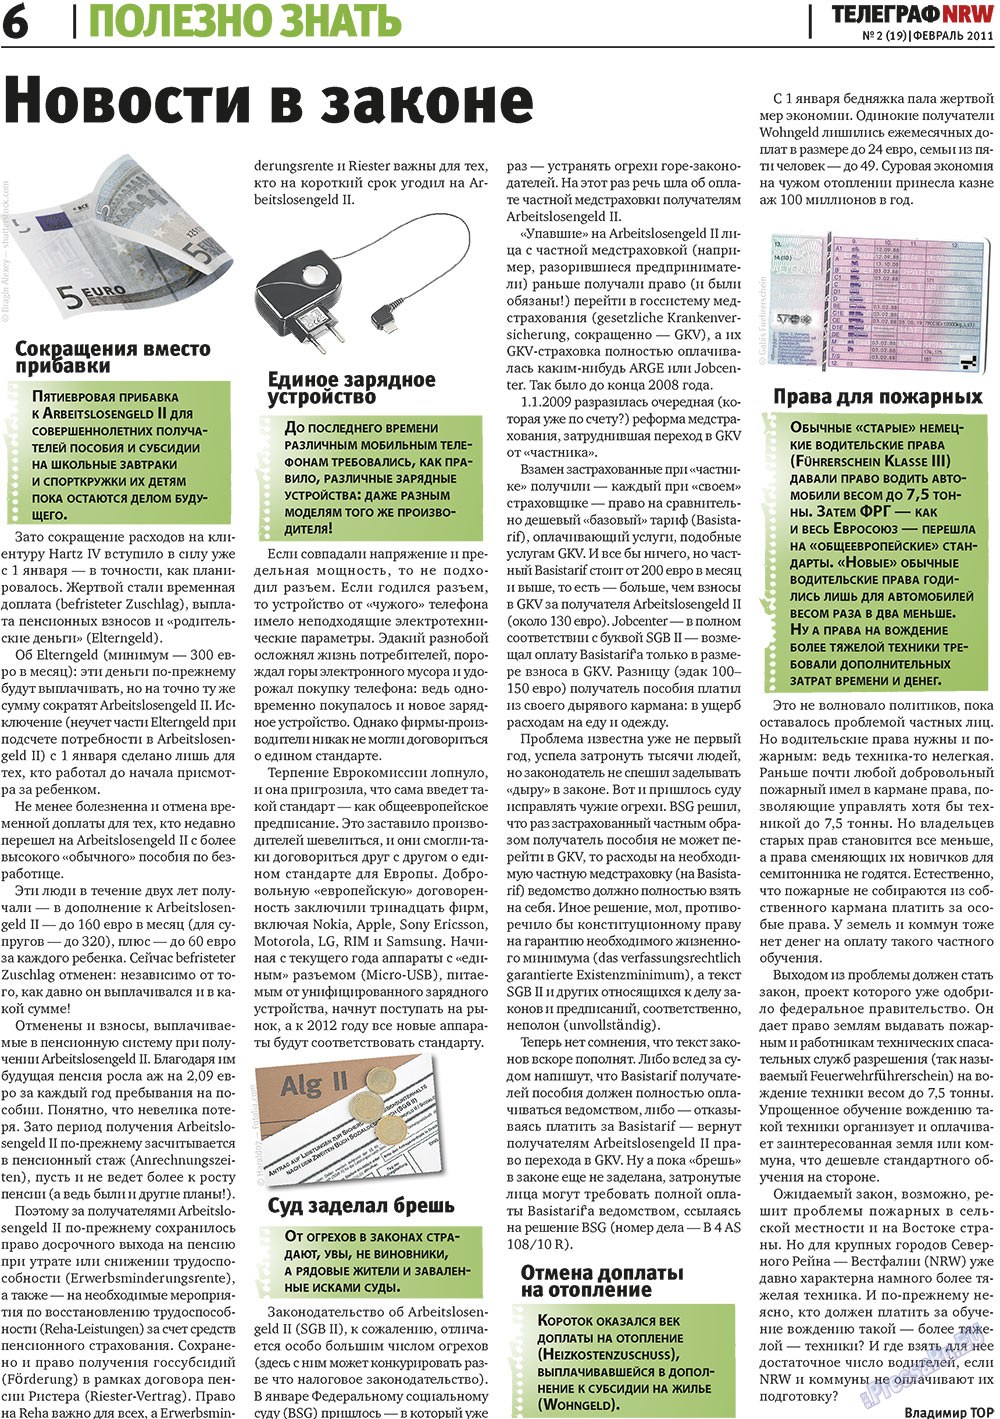 Телеграф NRW (газета). 2011 год, номер 2, стр. 6